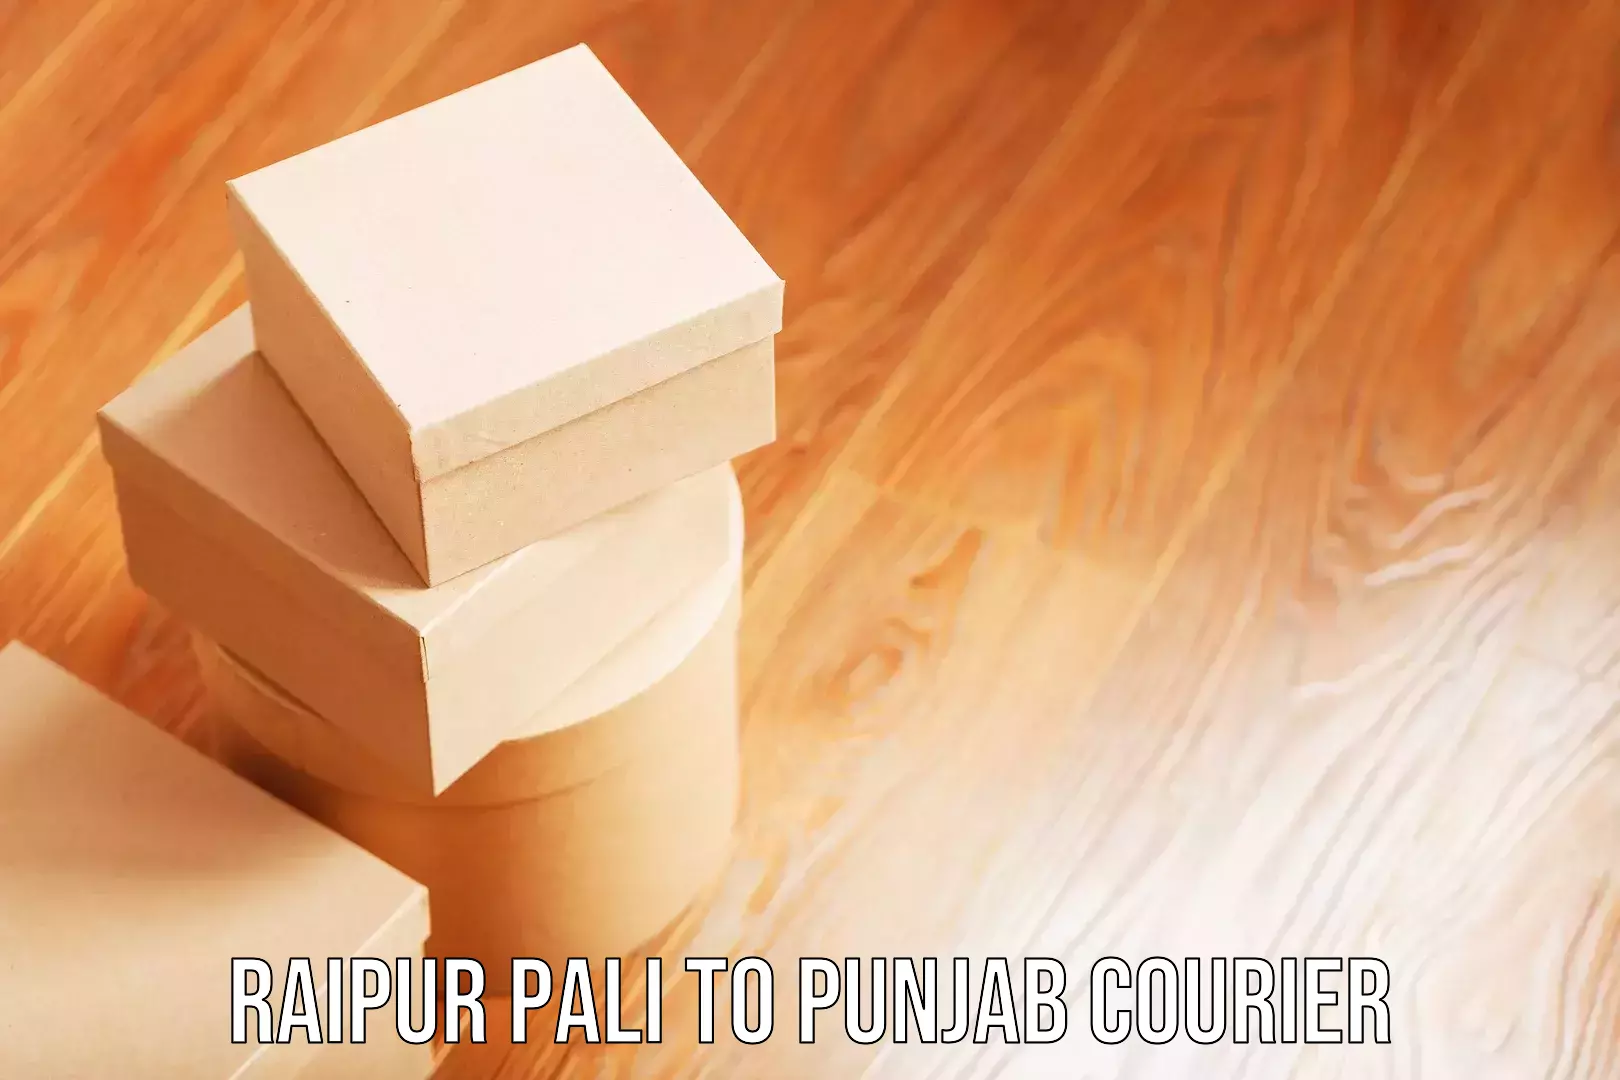 Group luggage shipping Raipur Pali to Punjab